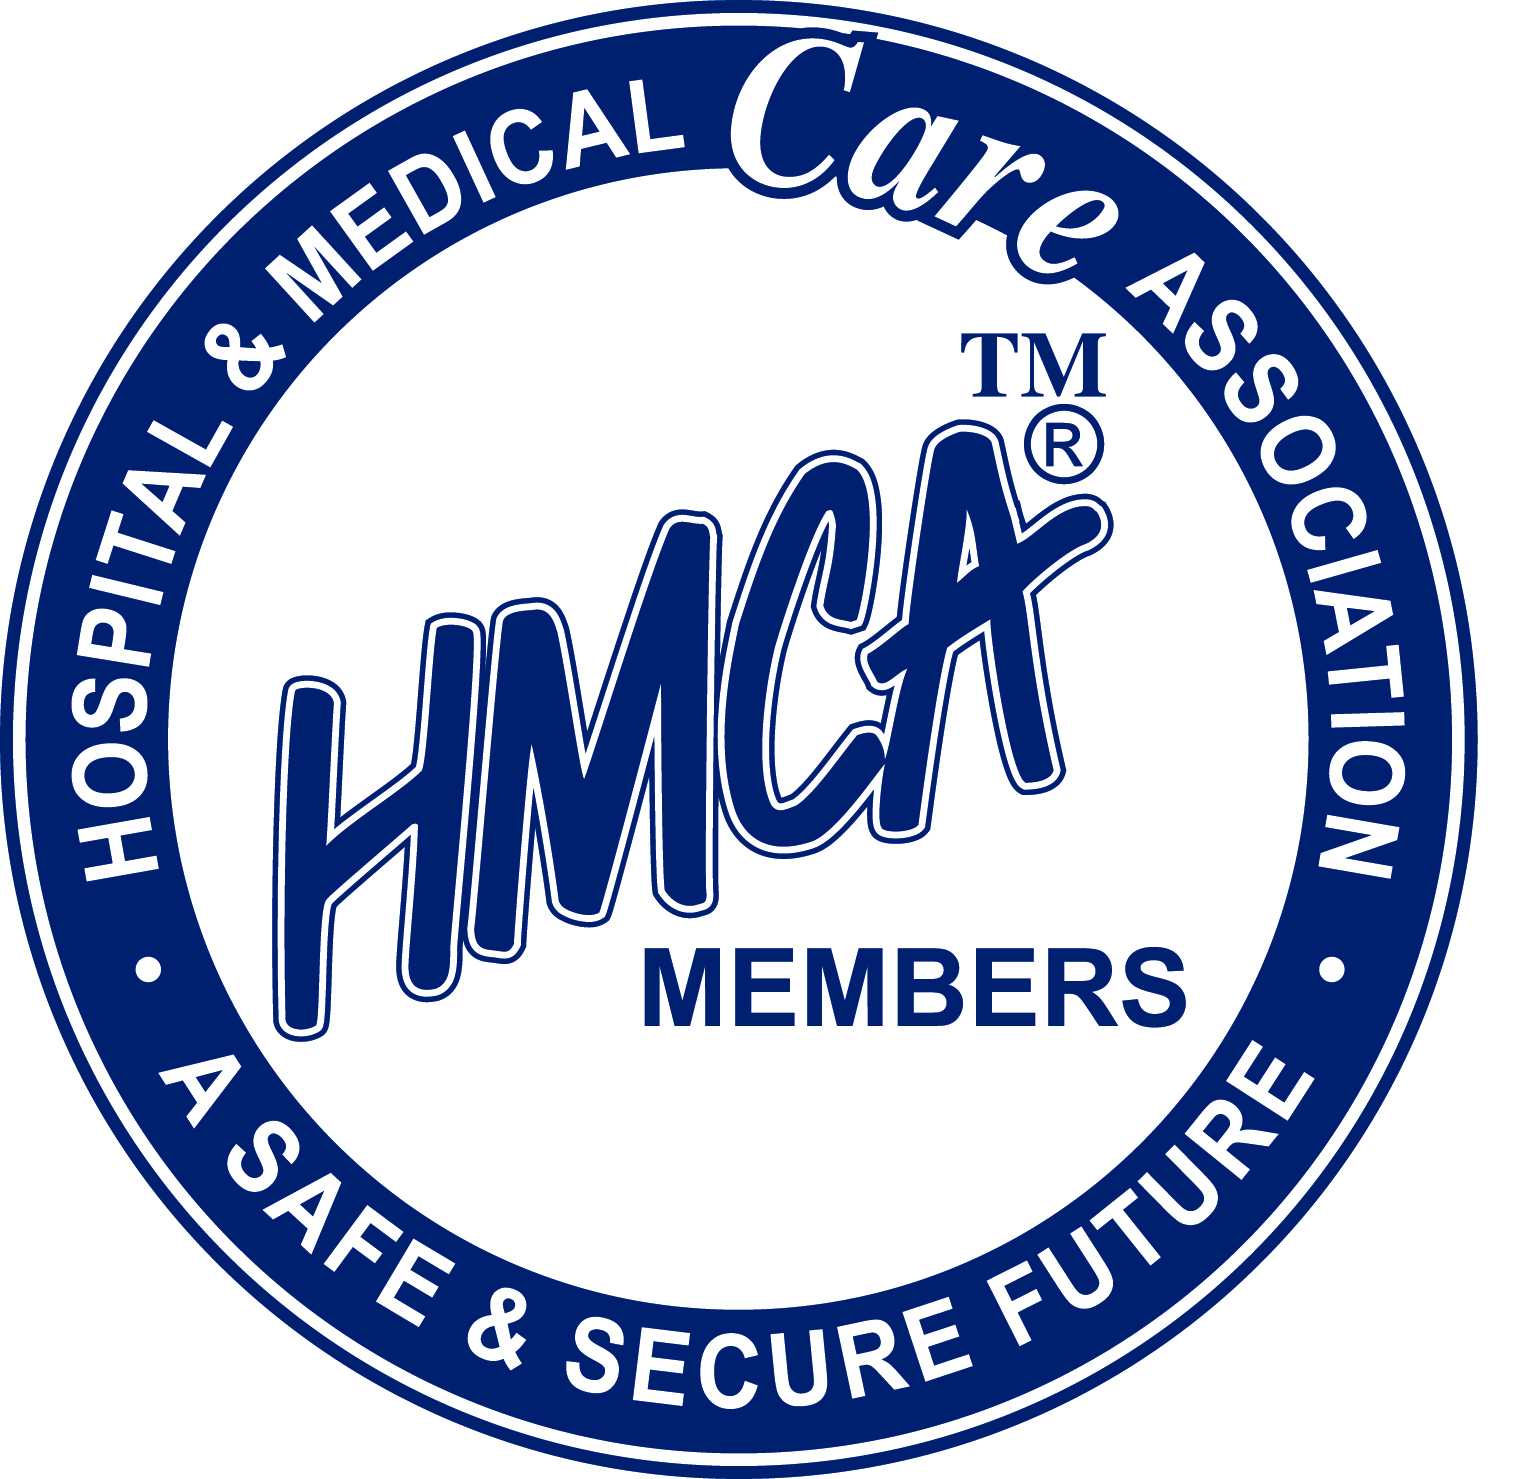 Hospital & Medical Care Association (HMCA)